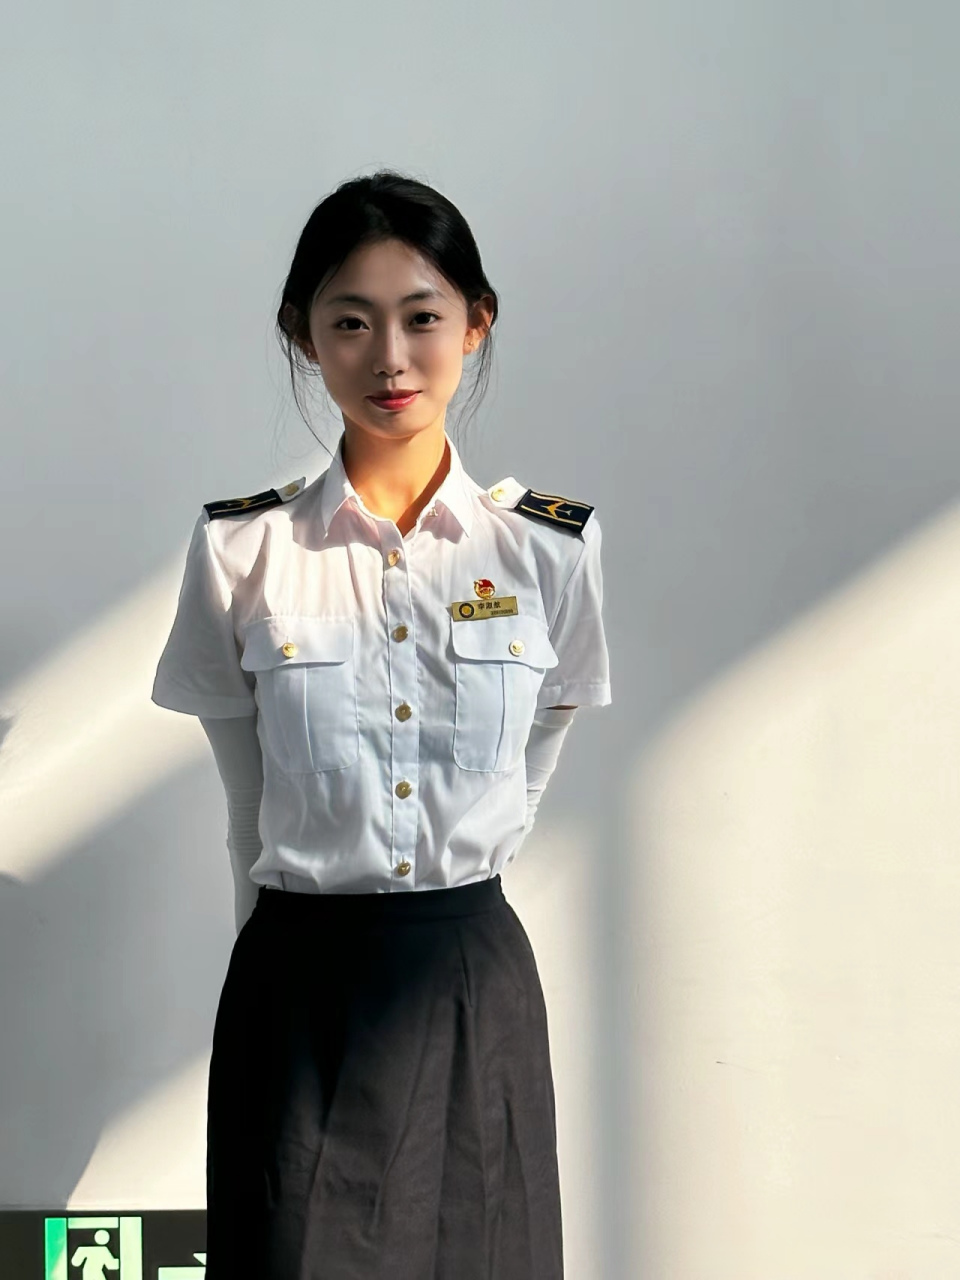 中国民航大学制服样式图片